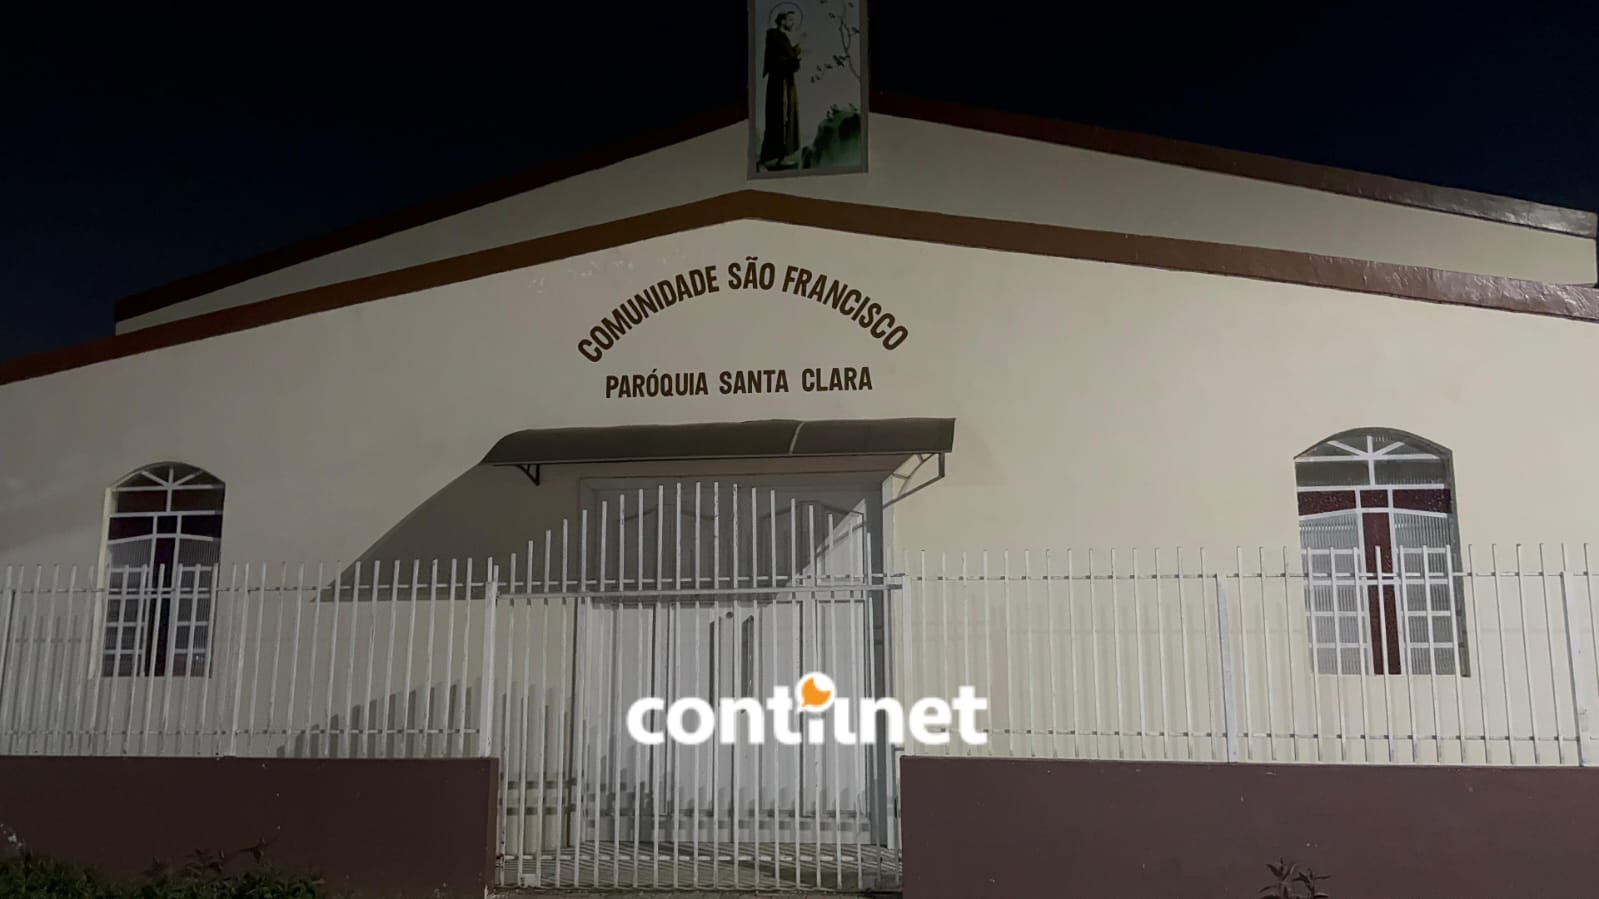 Eletricista morre ao despencar de altura de 5 metros dentro de igreja